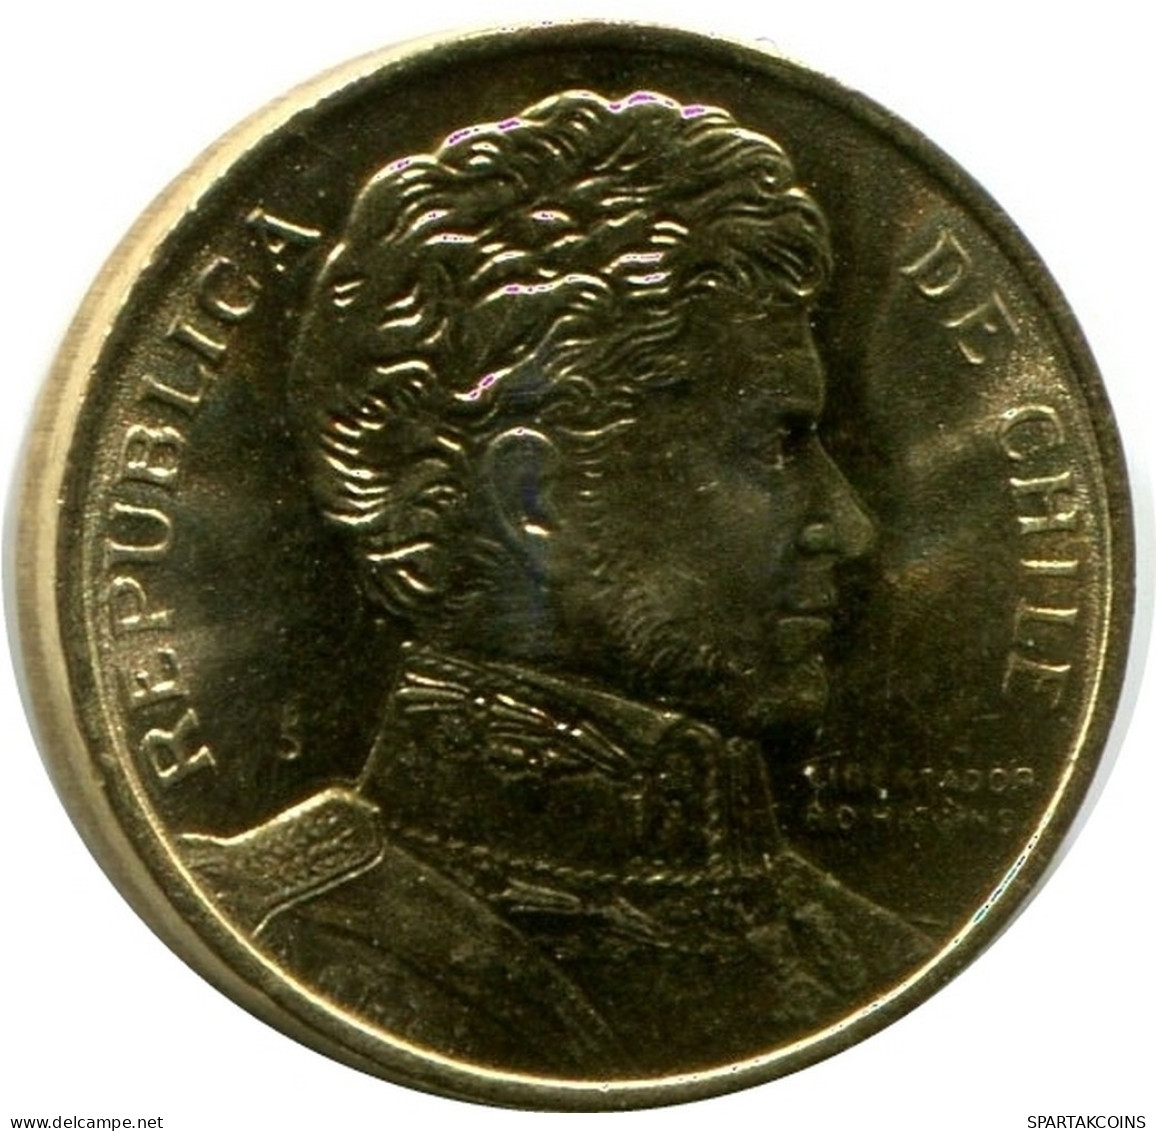 1 PESO 1990 CHILE UNC Coin #M10076.U.A - Chile